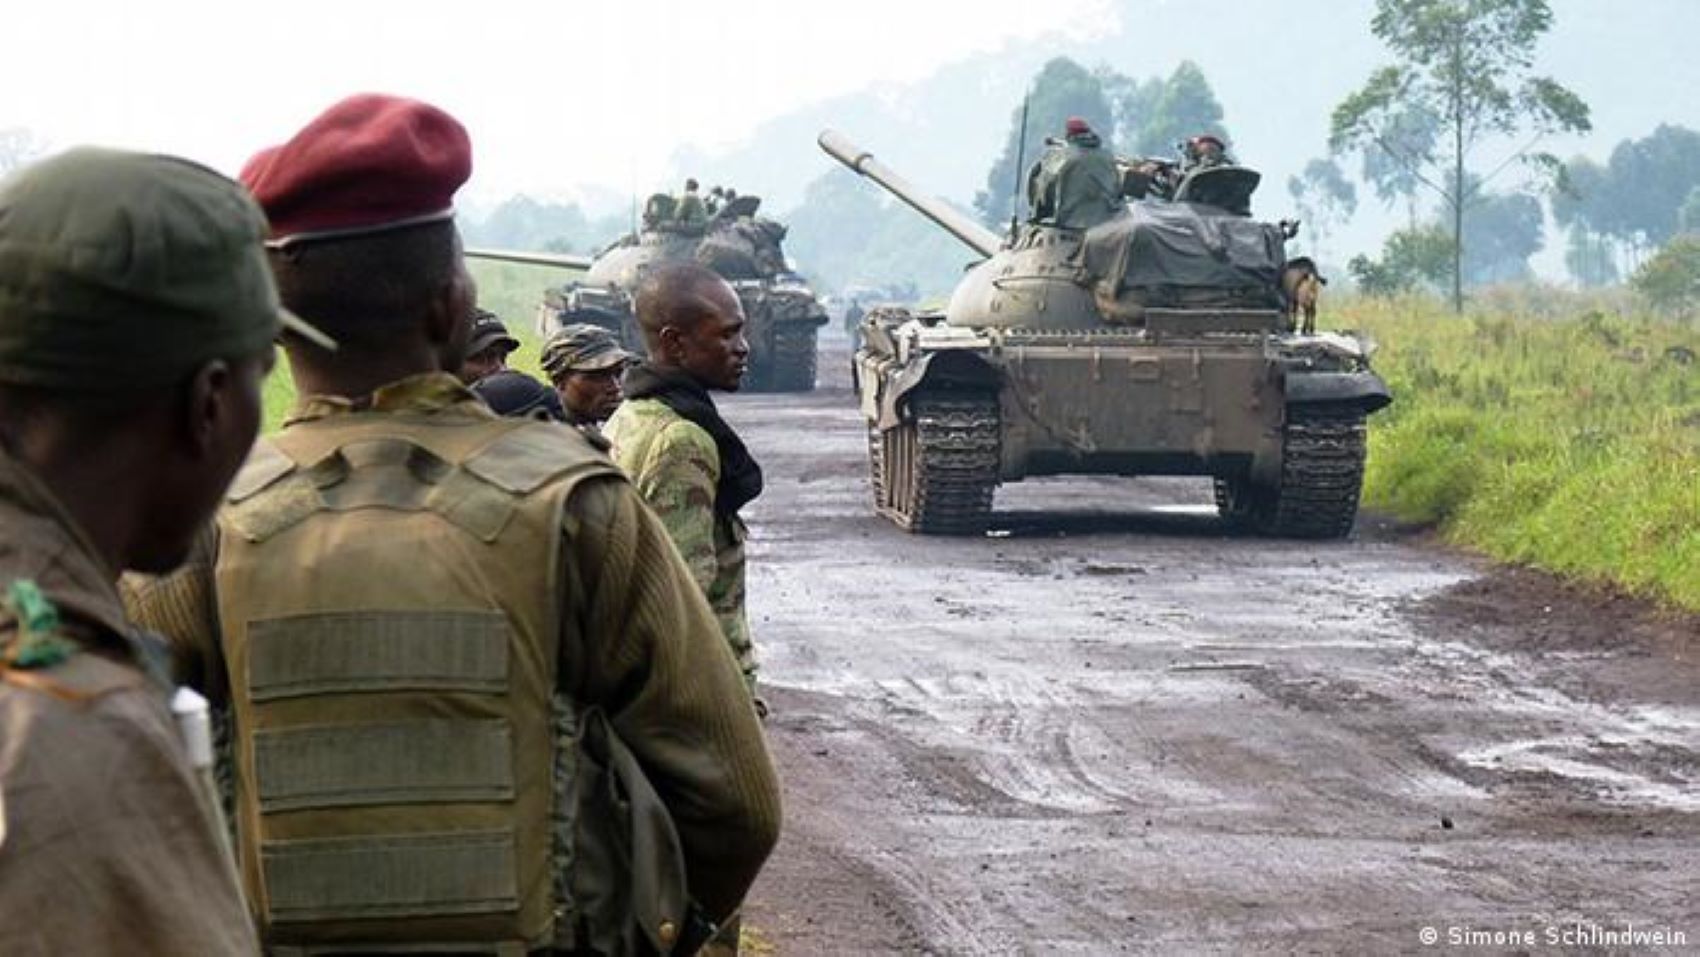 RDC: reprise des combats entre l’armée congolaise et le M23 après cinq jours de cessez-le-feu